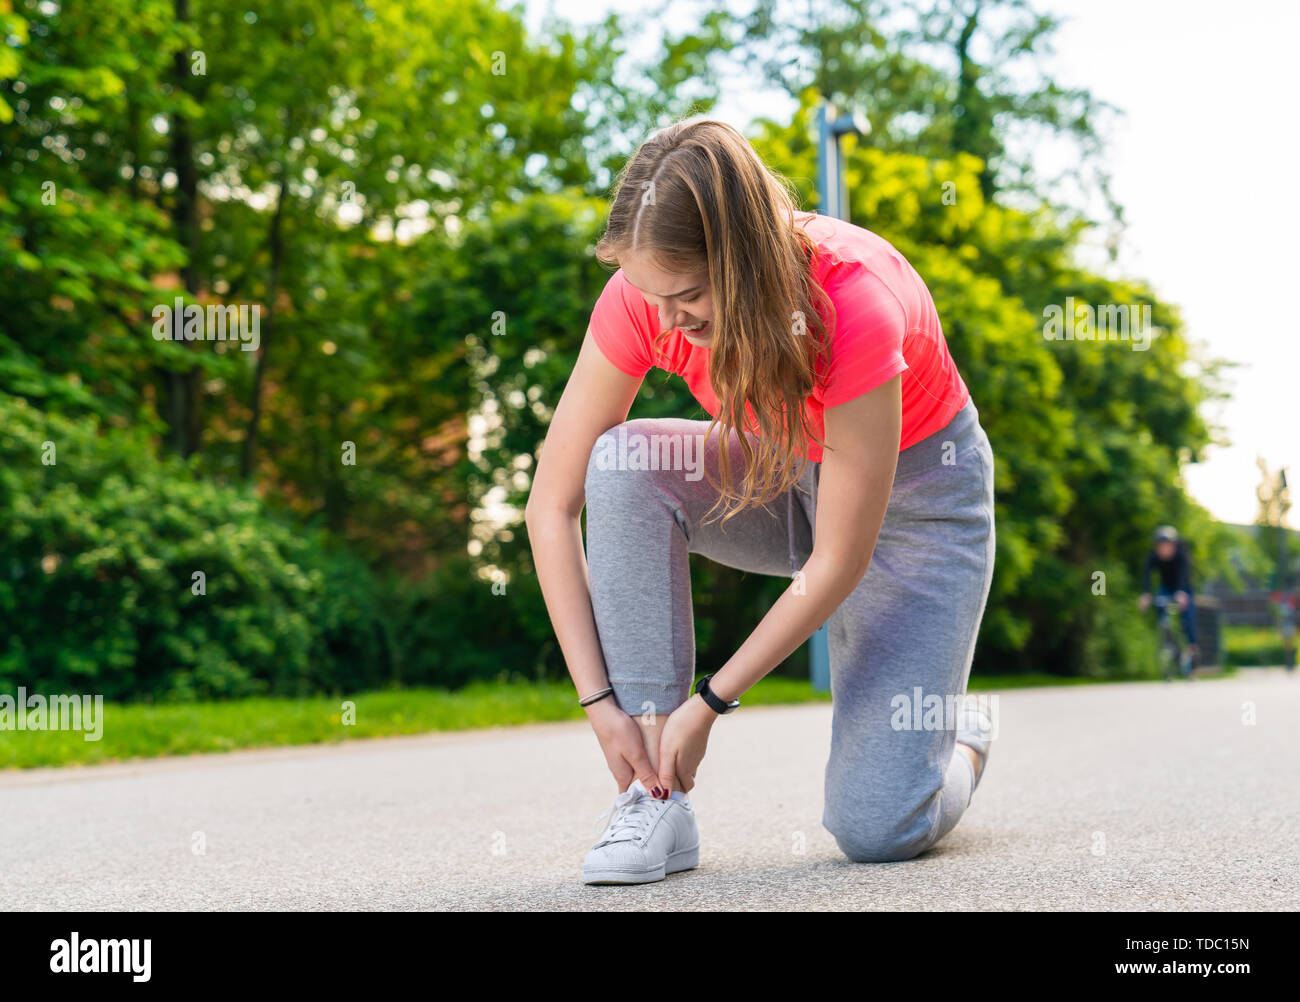 Une jeune femme jogger s'est blessée au pied et a une douleur Banque D'Images